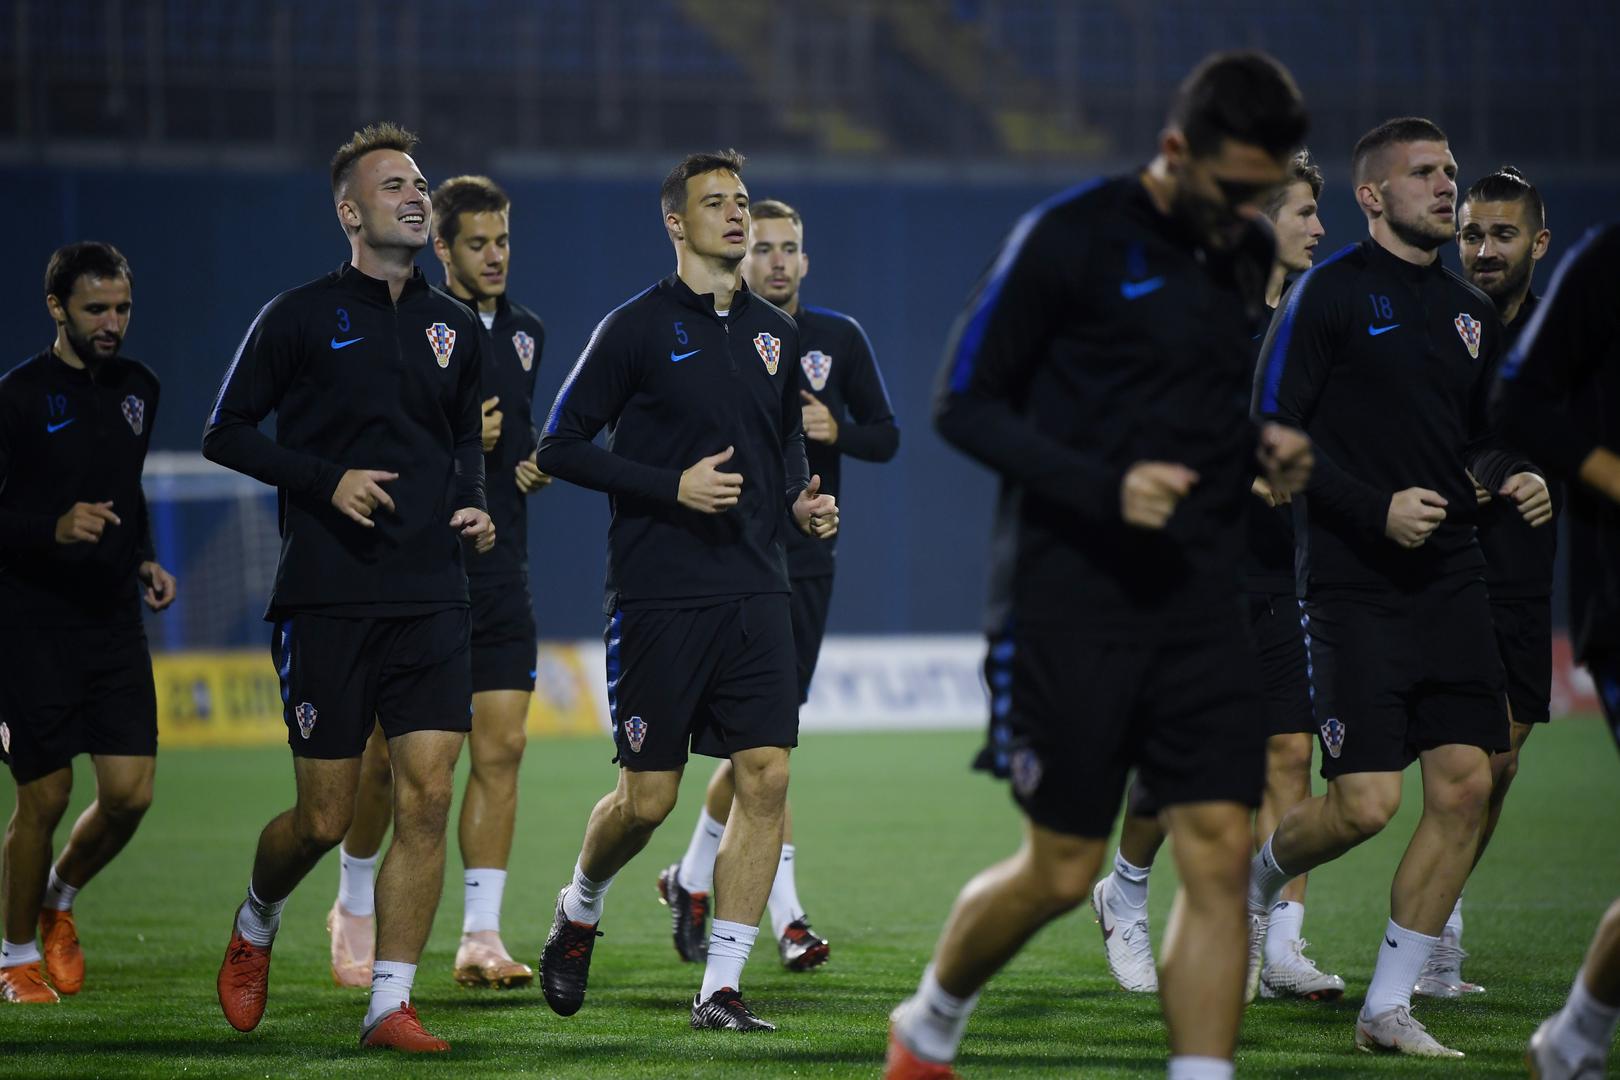 Hrvatski nogometaši tijekom dana okupili su se u Zagrebu, a navečer odradili i trening na Maksimiru.

